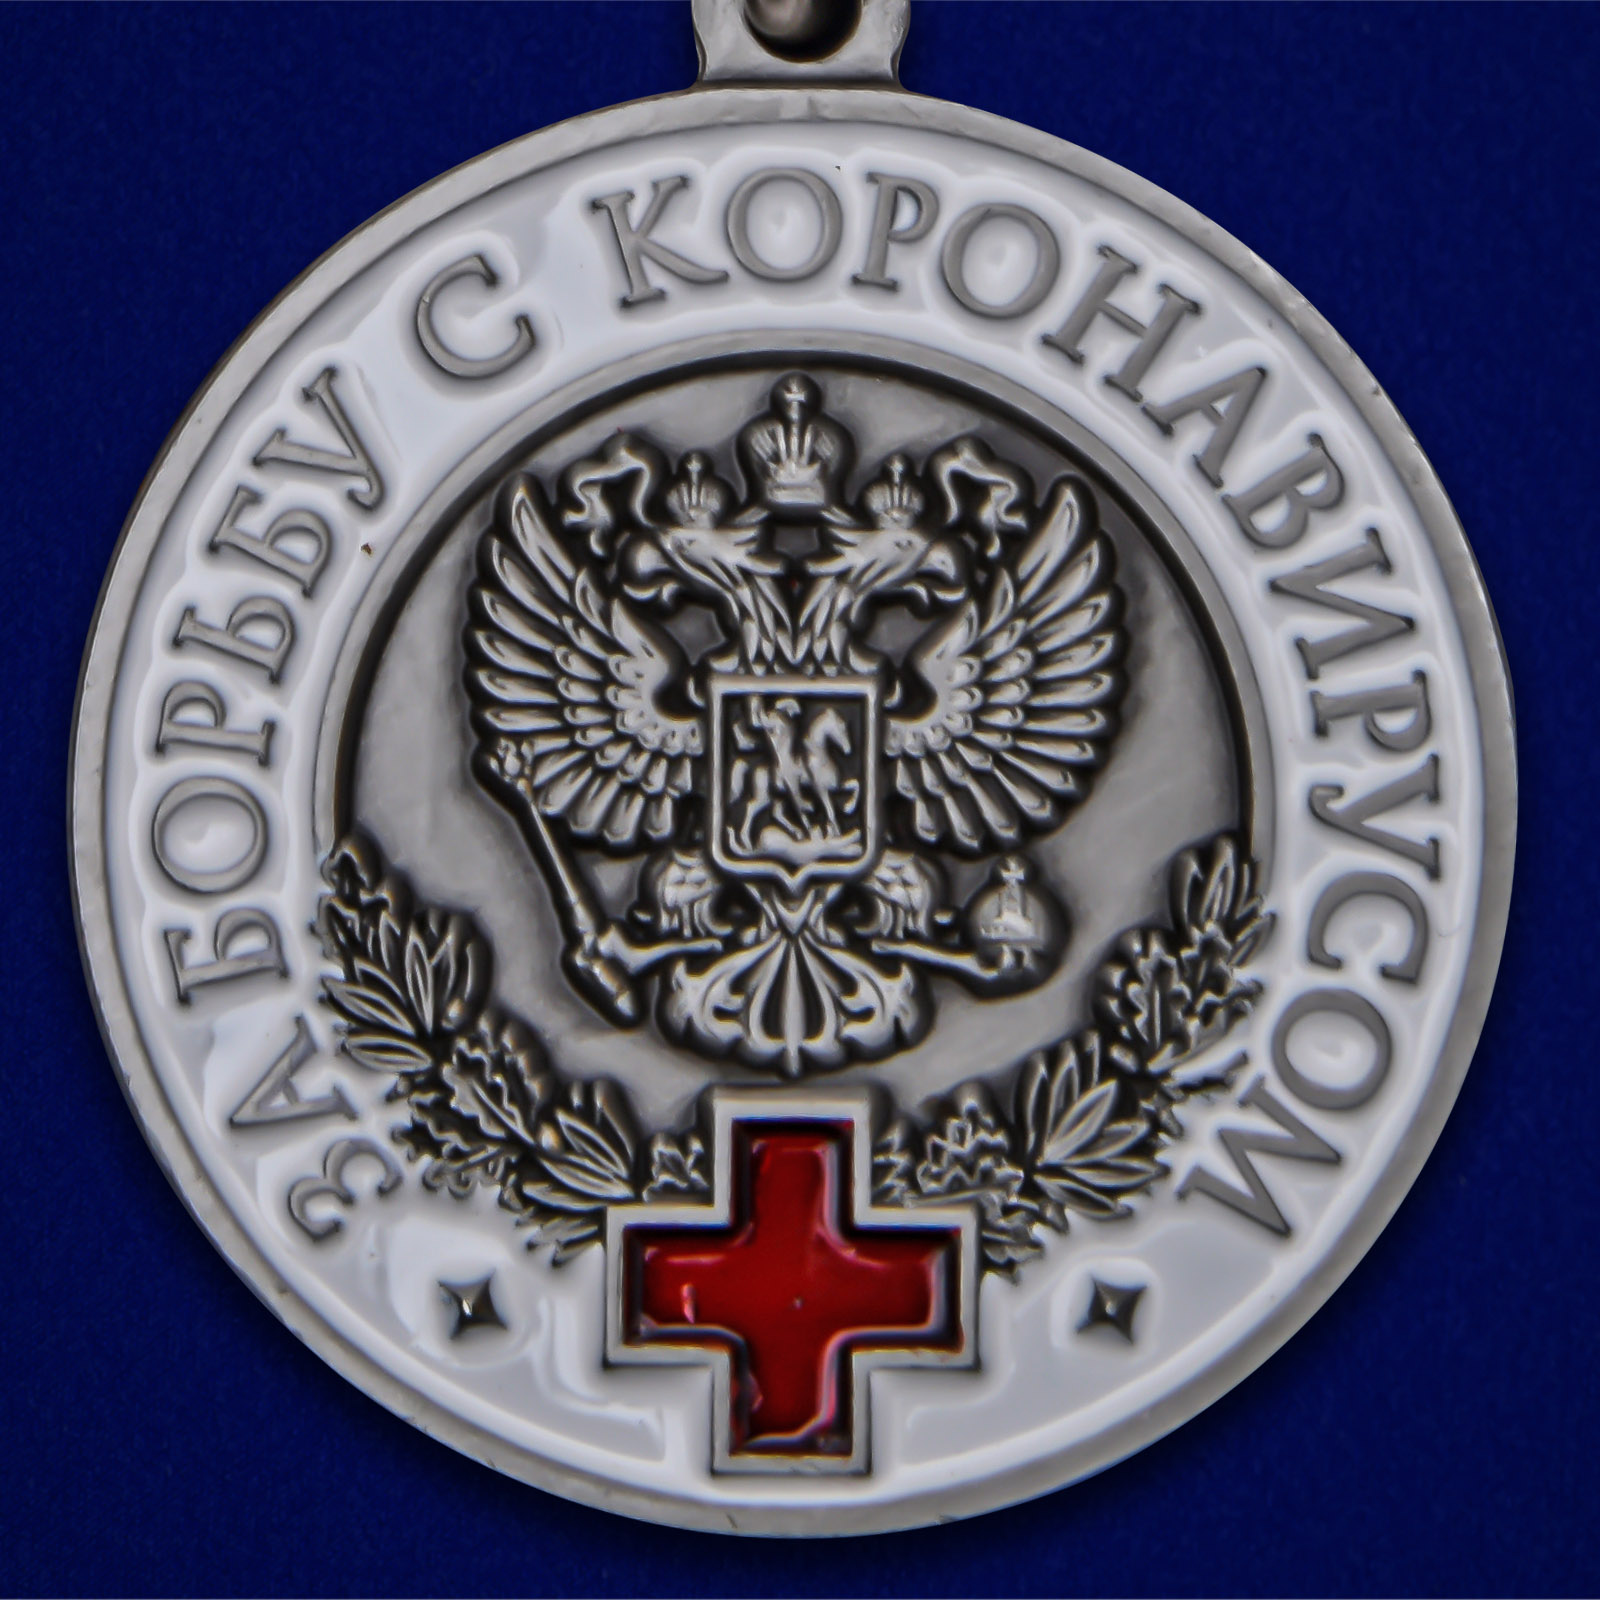 Наградная медаль "За борьбу с коронавирусом" 